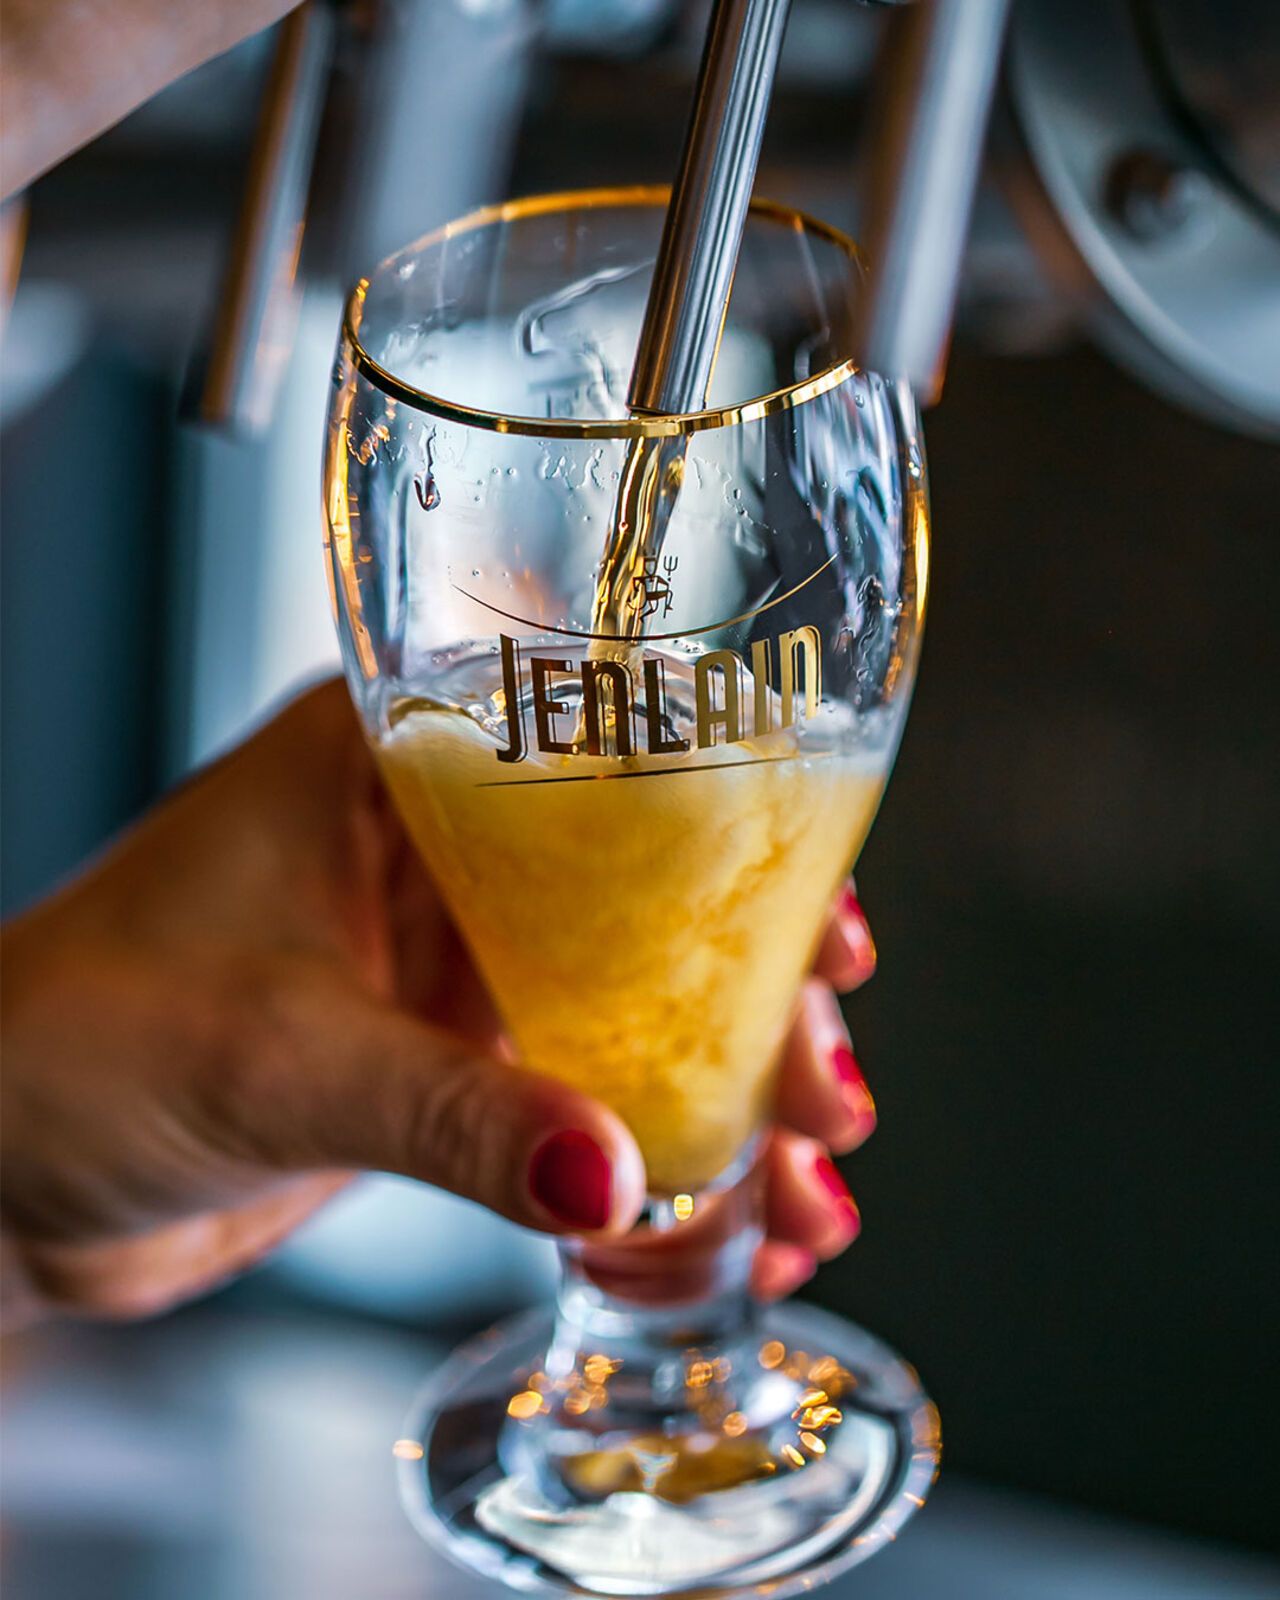 Jenlain sublime l'été avec trois bière incontournables : Blanche, Blonde et Session IPA